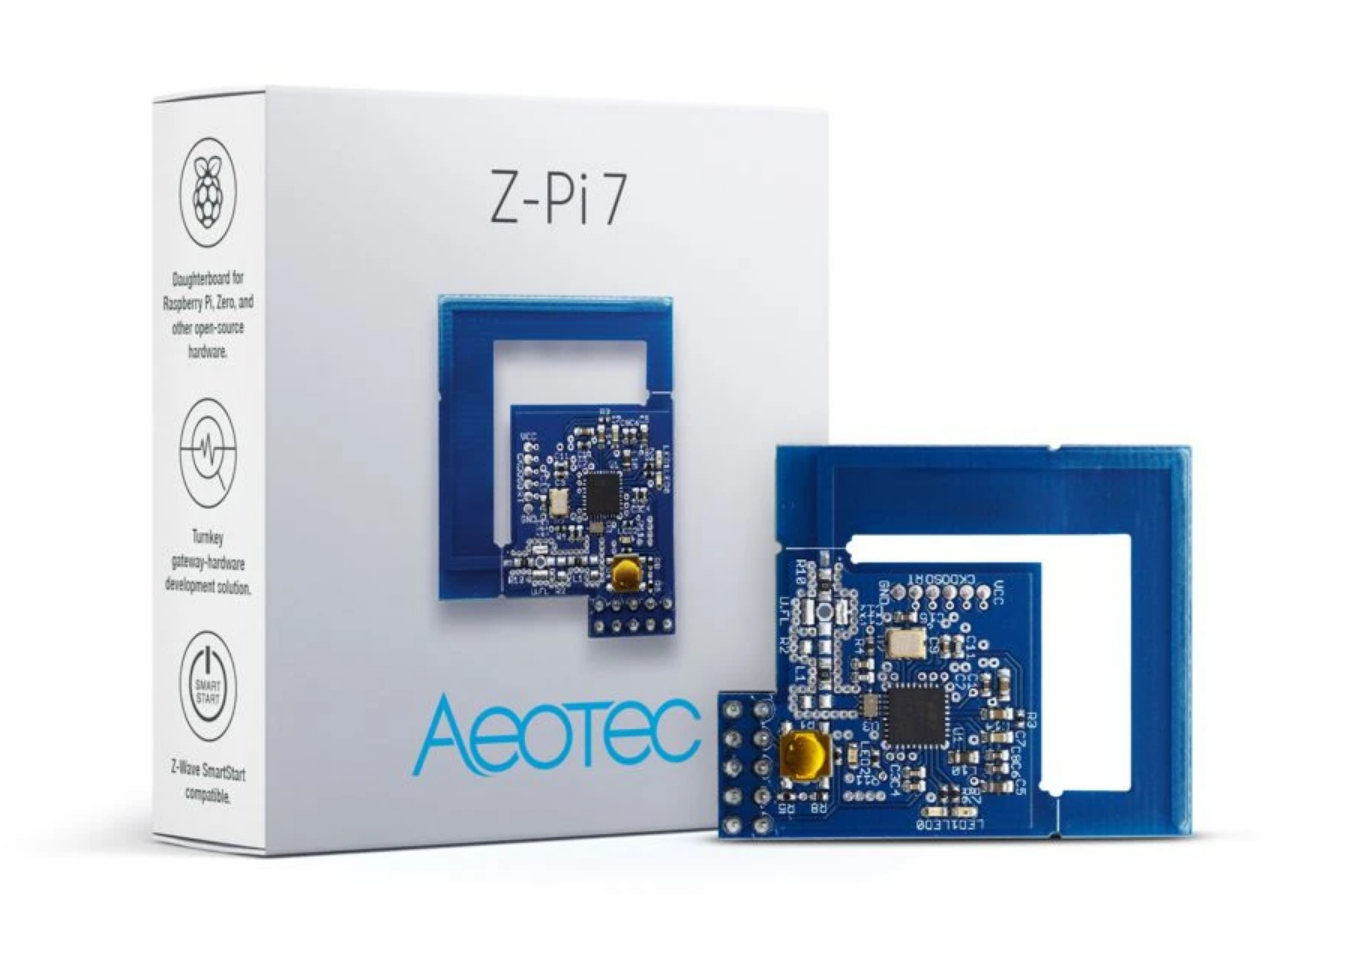 Aeotec's Z-Pi 7 Z-Wave gateway module for your Raspberry Pi 